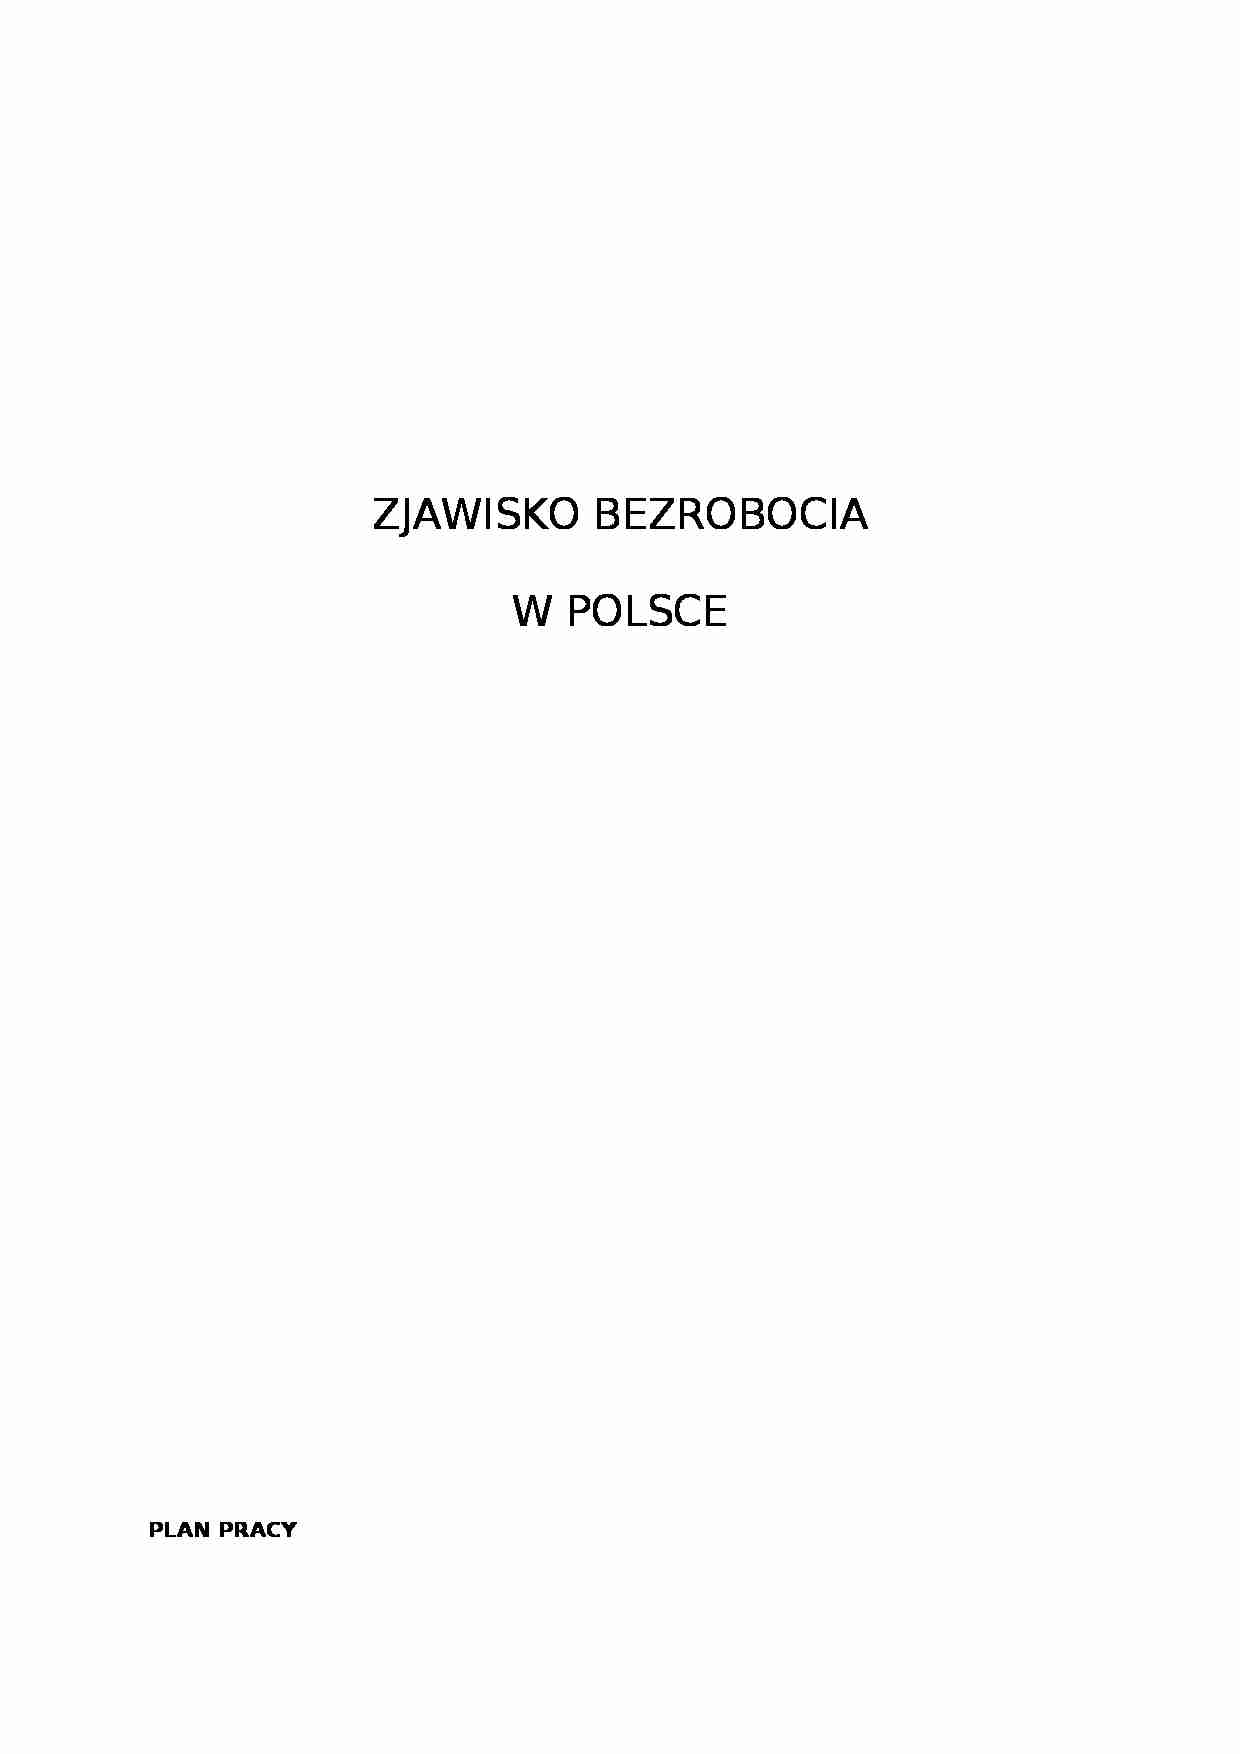 Zjawisko bezrobocia w Polsce - strona 1